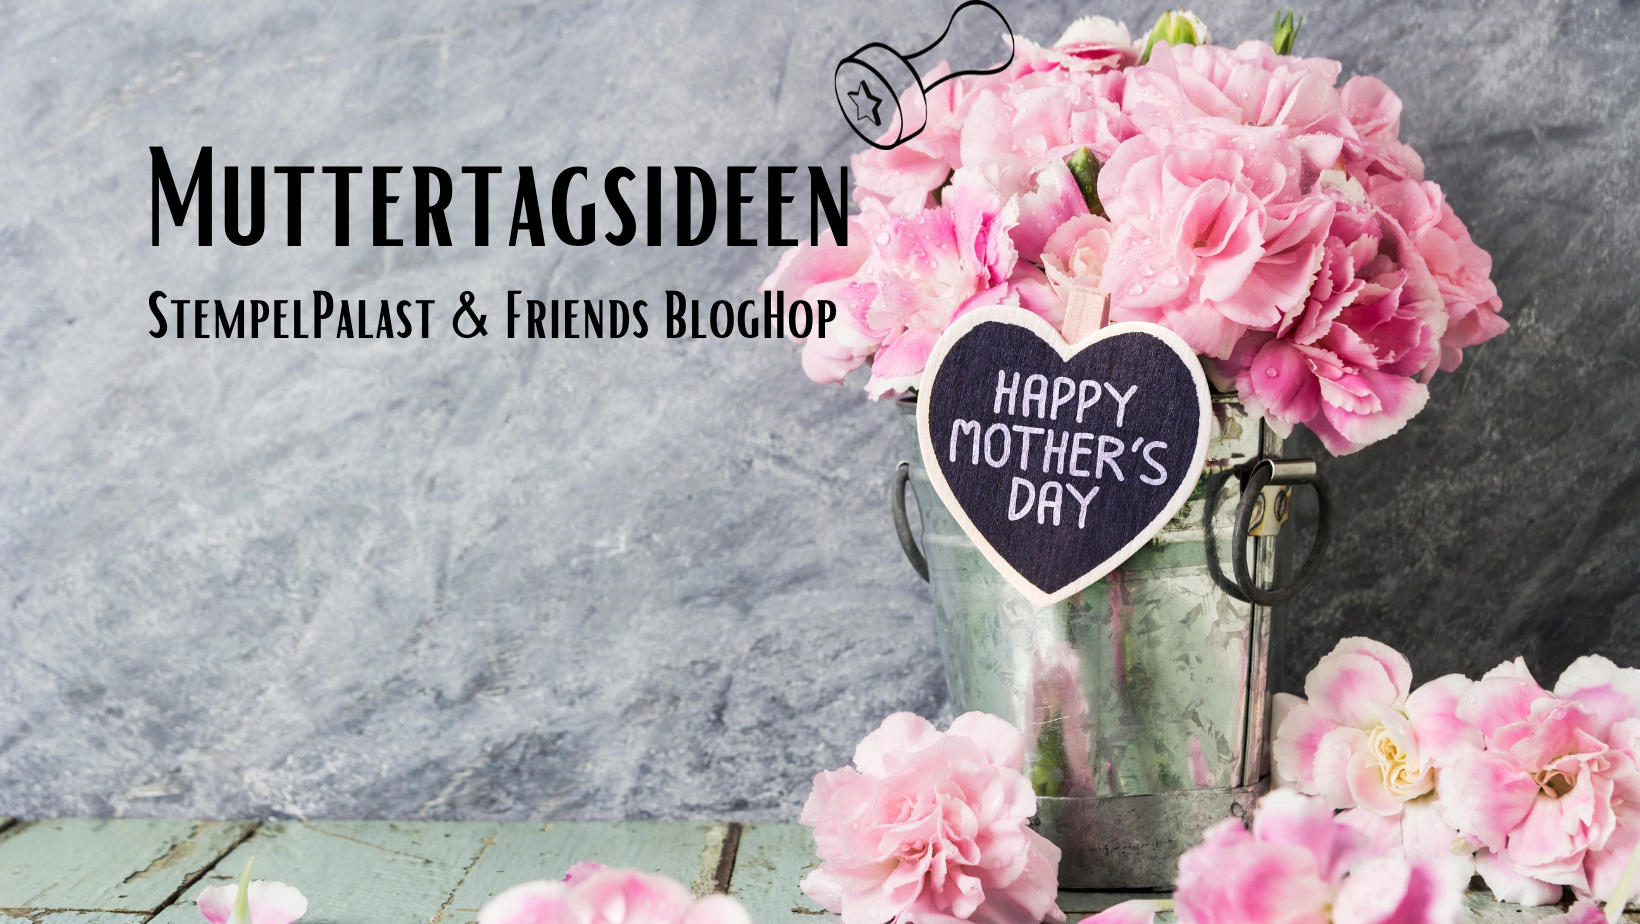 Stempelpalast & Friends Bloghop – Muttertagsideen